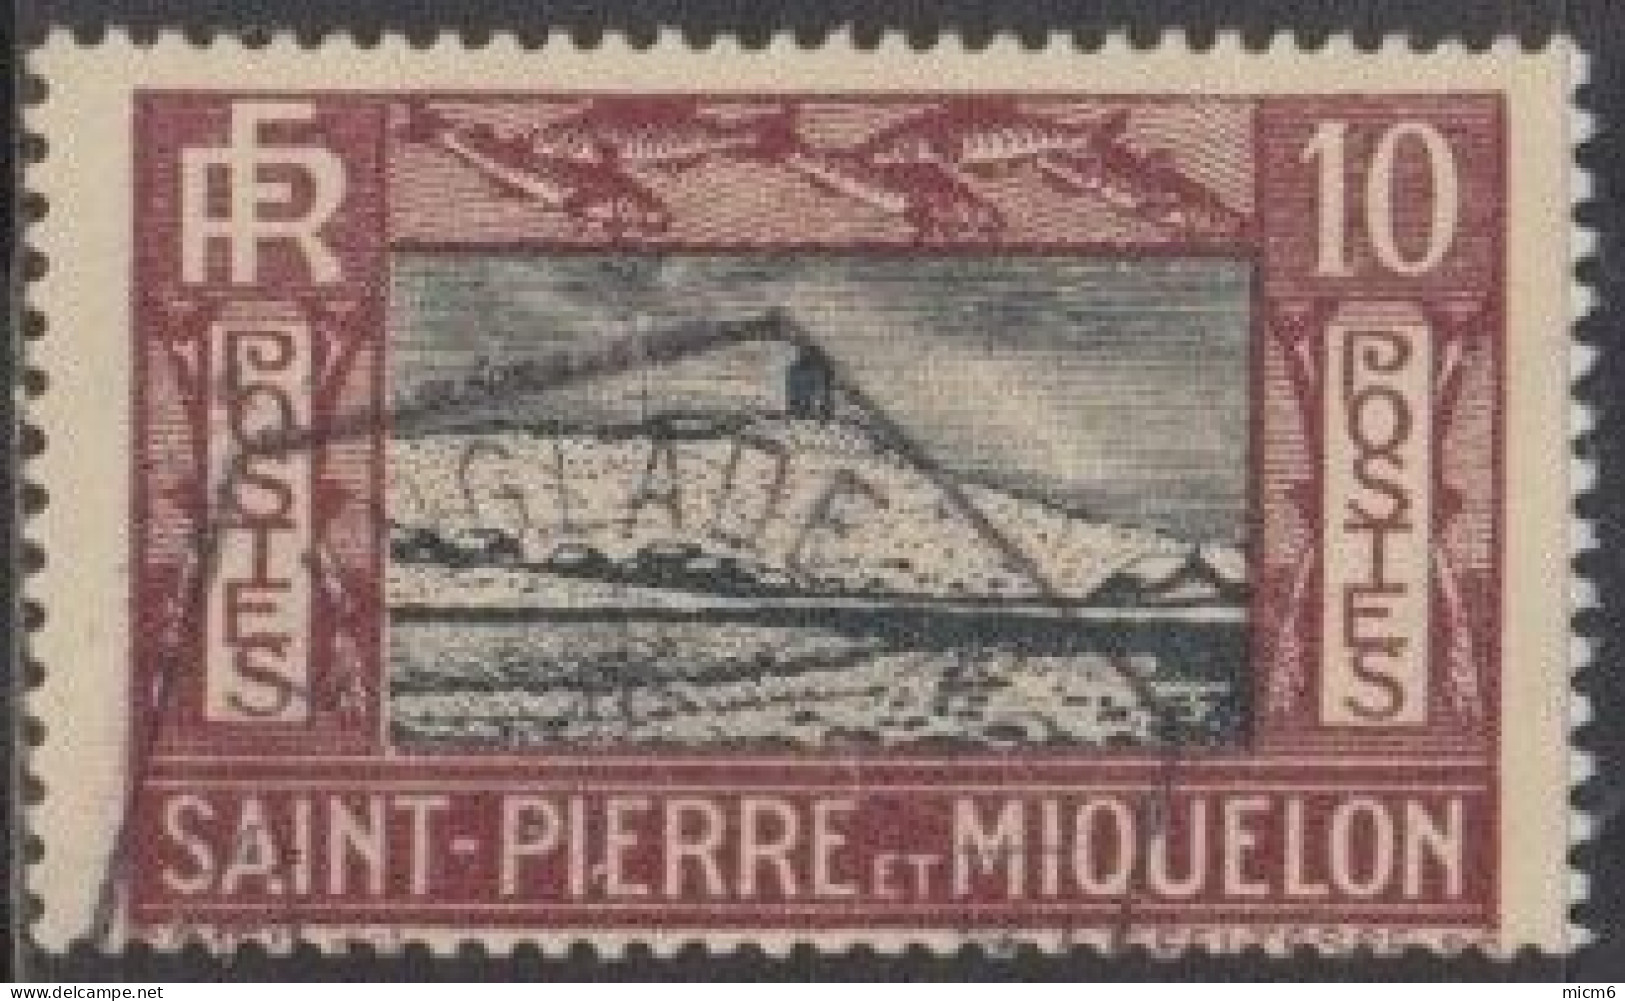 Saint-Pierre Et Miquelon 1910-1939 - N° 140 (YT) N° 143 (AM) Oblitéré De Langlade. - Gebruikt